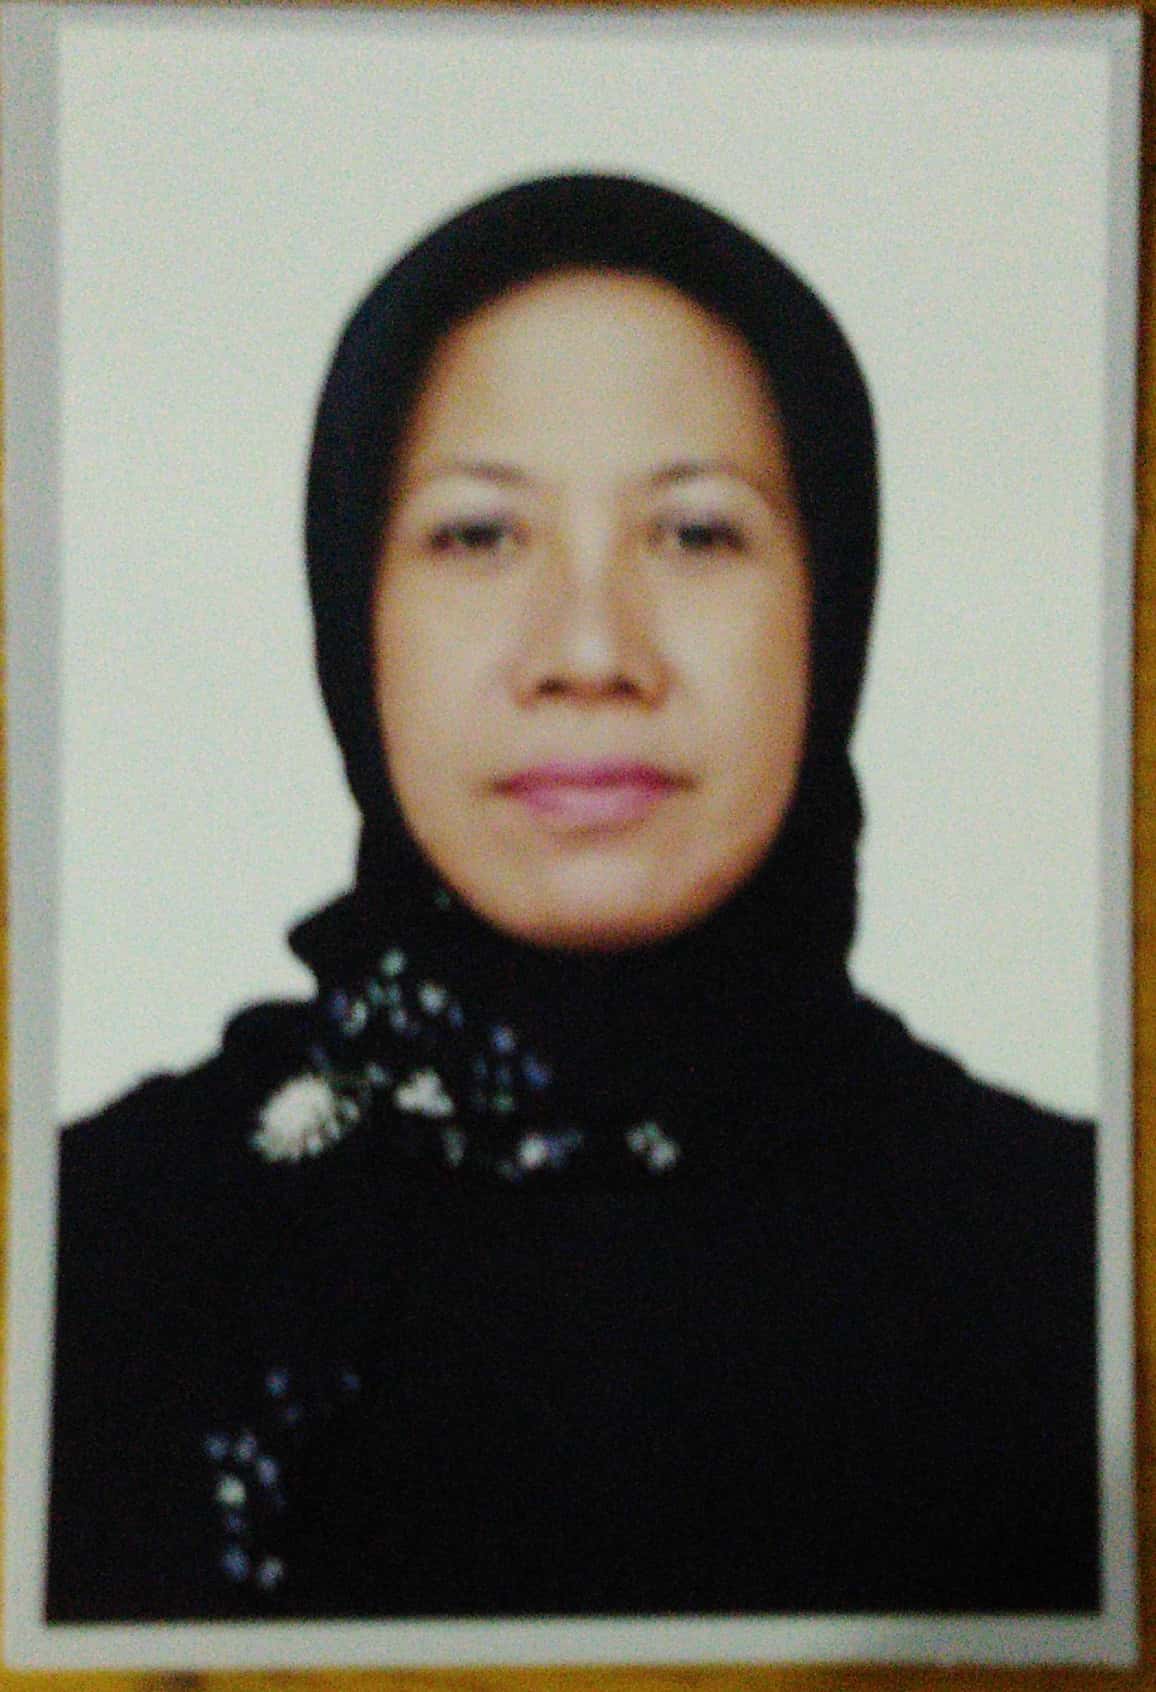 Siti Nurhayati